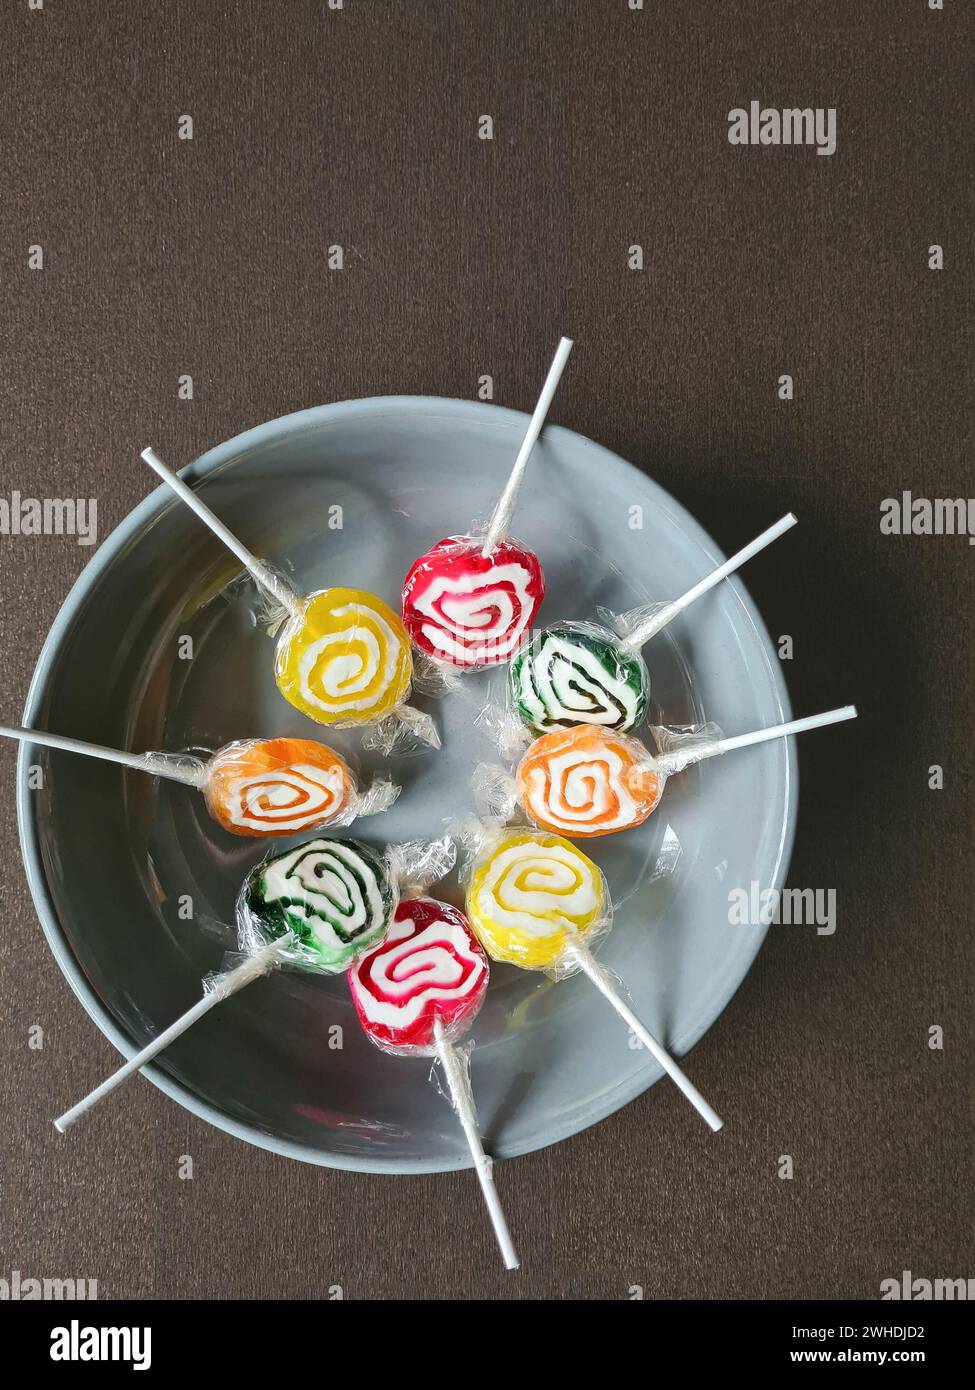 Huit sucettes sont encore enveloppées dans une feuille de plastique dans un cercle sur un bol blanc Banque D'Images